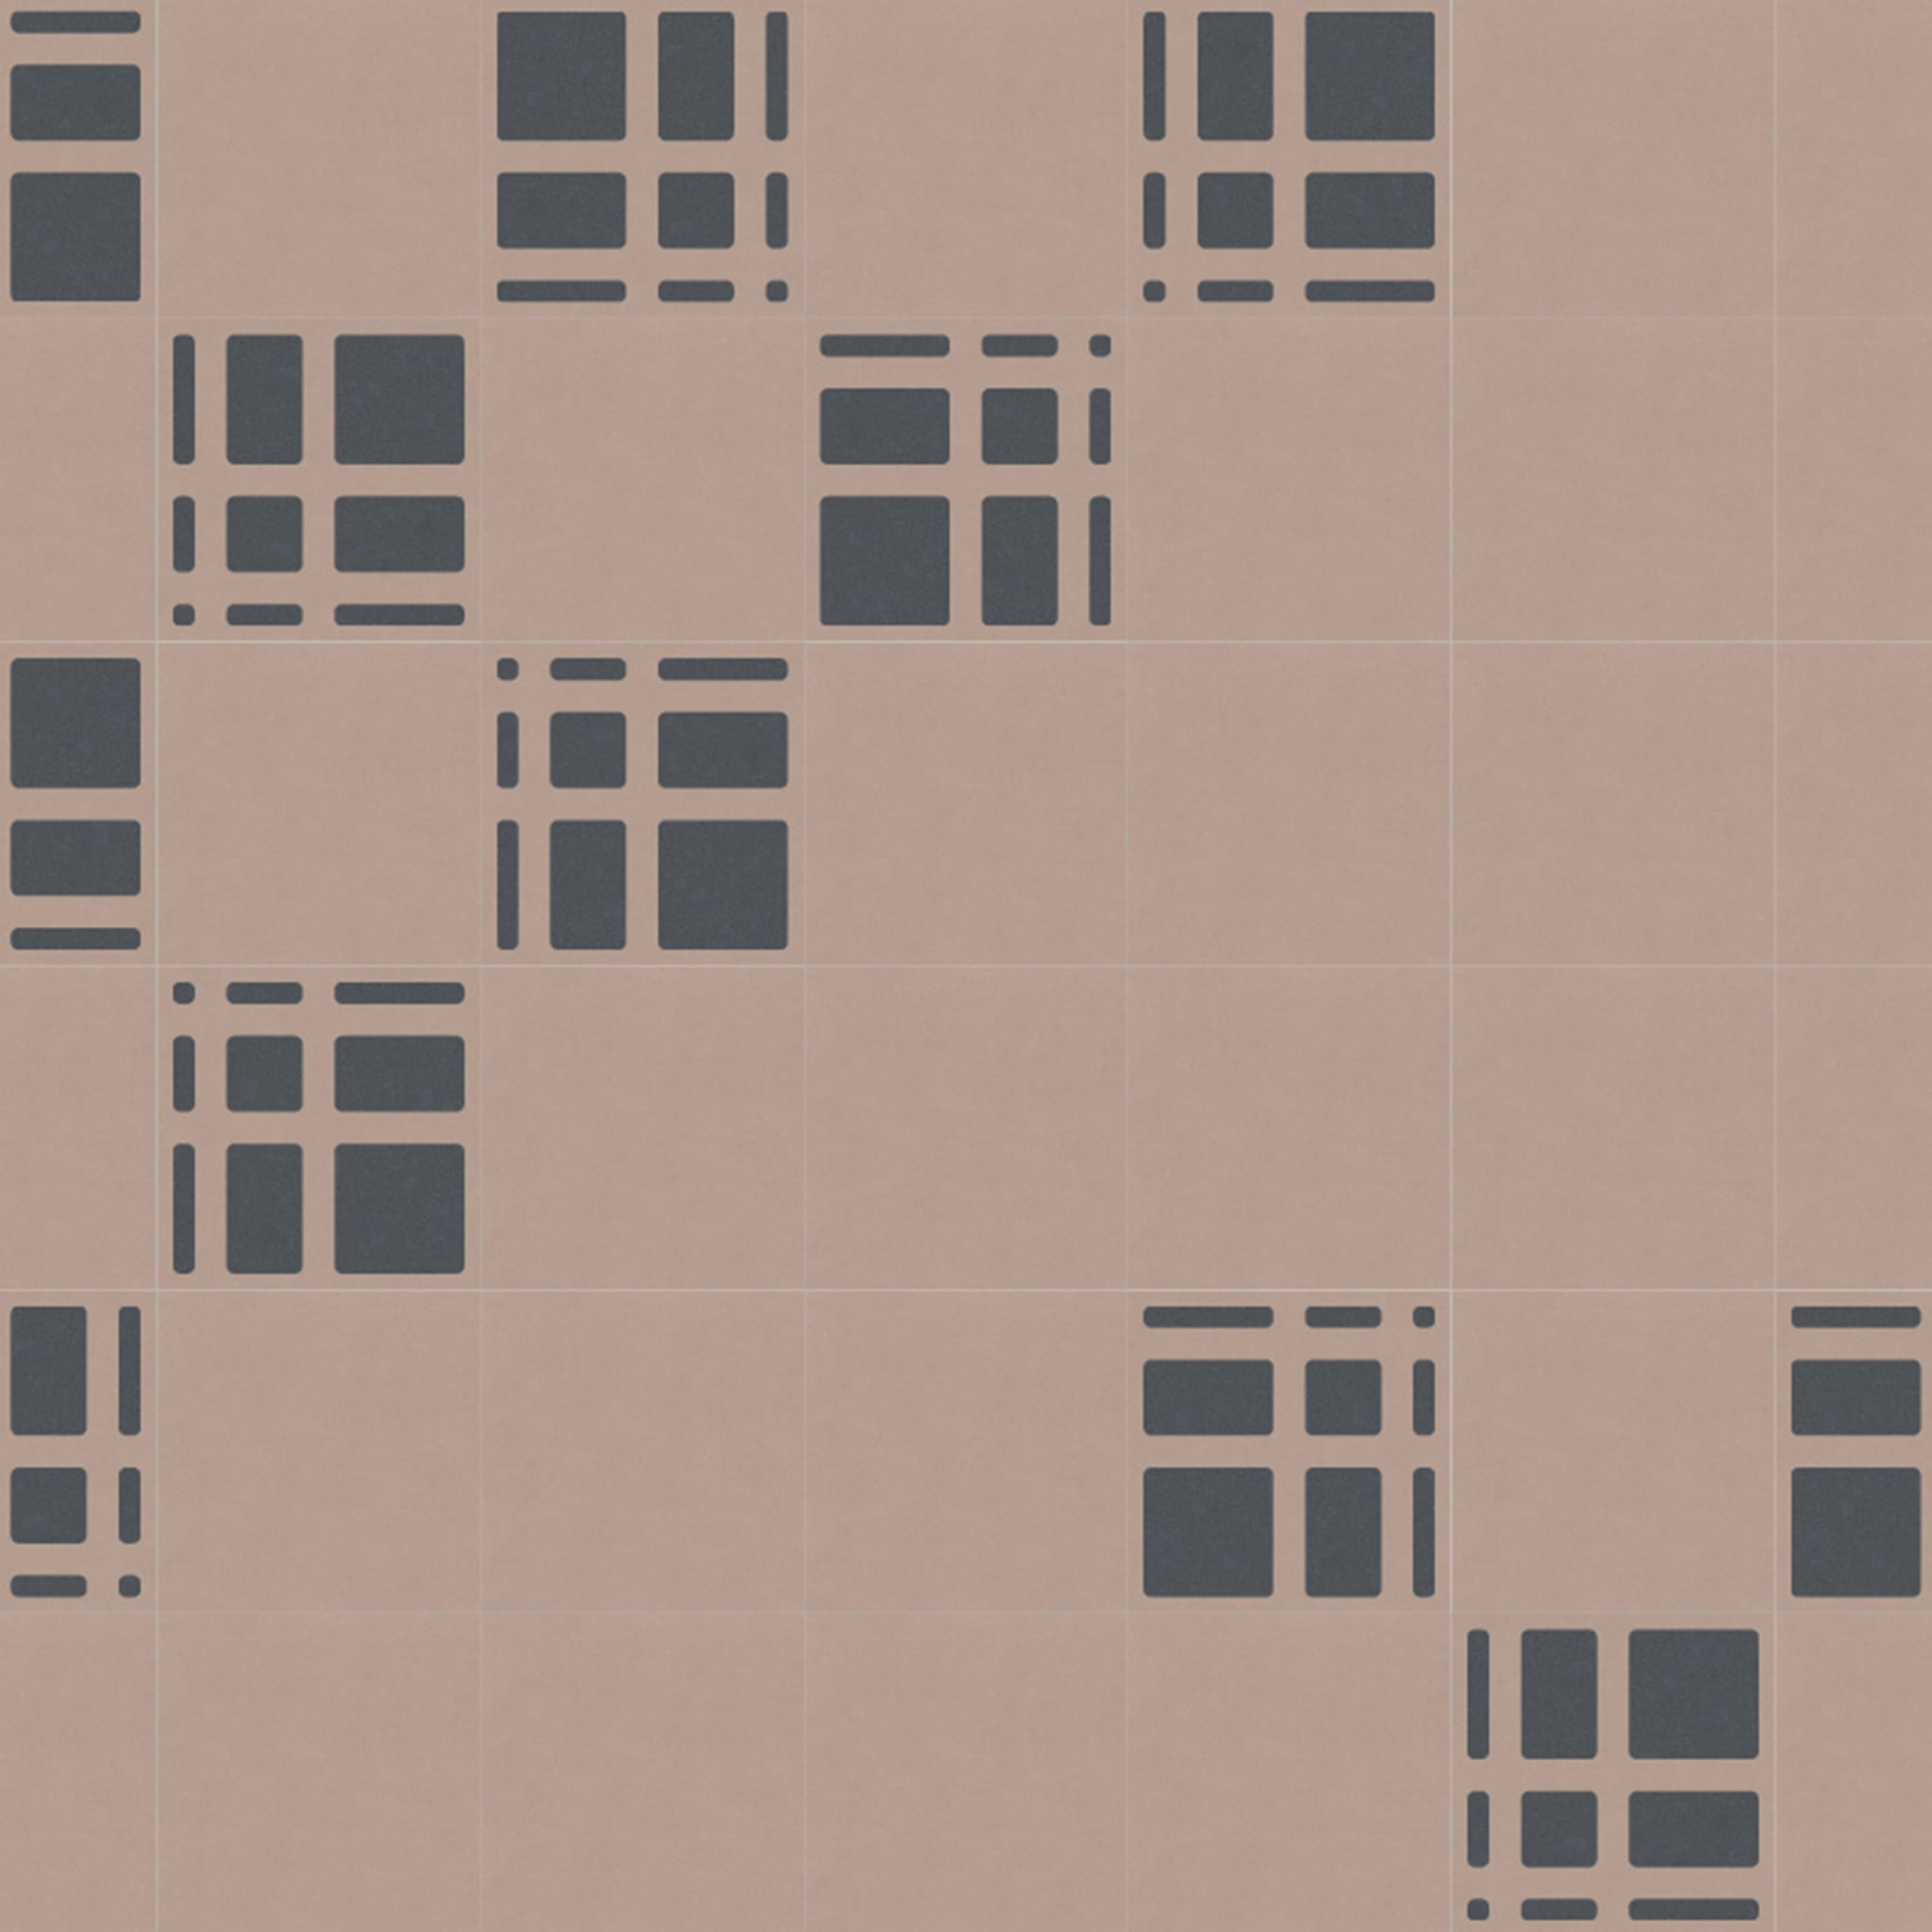 Tartan Set of 25 Pink & Gray Concrete Tiles - Alternative view 1